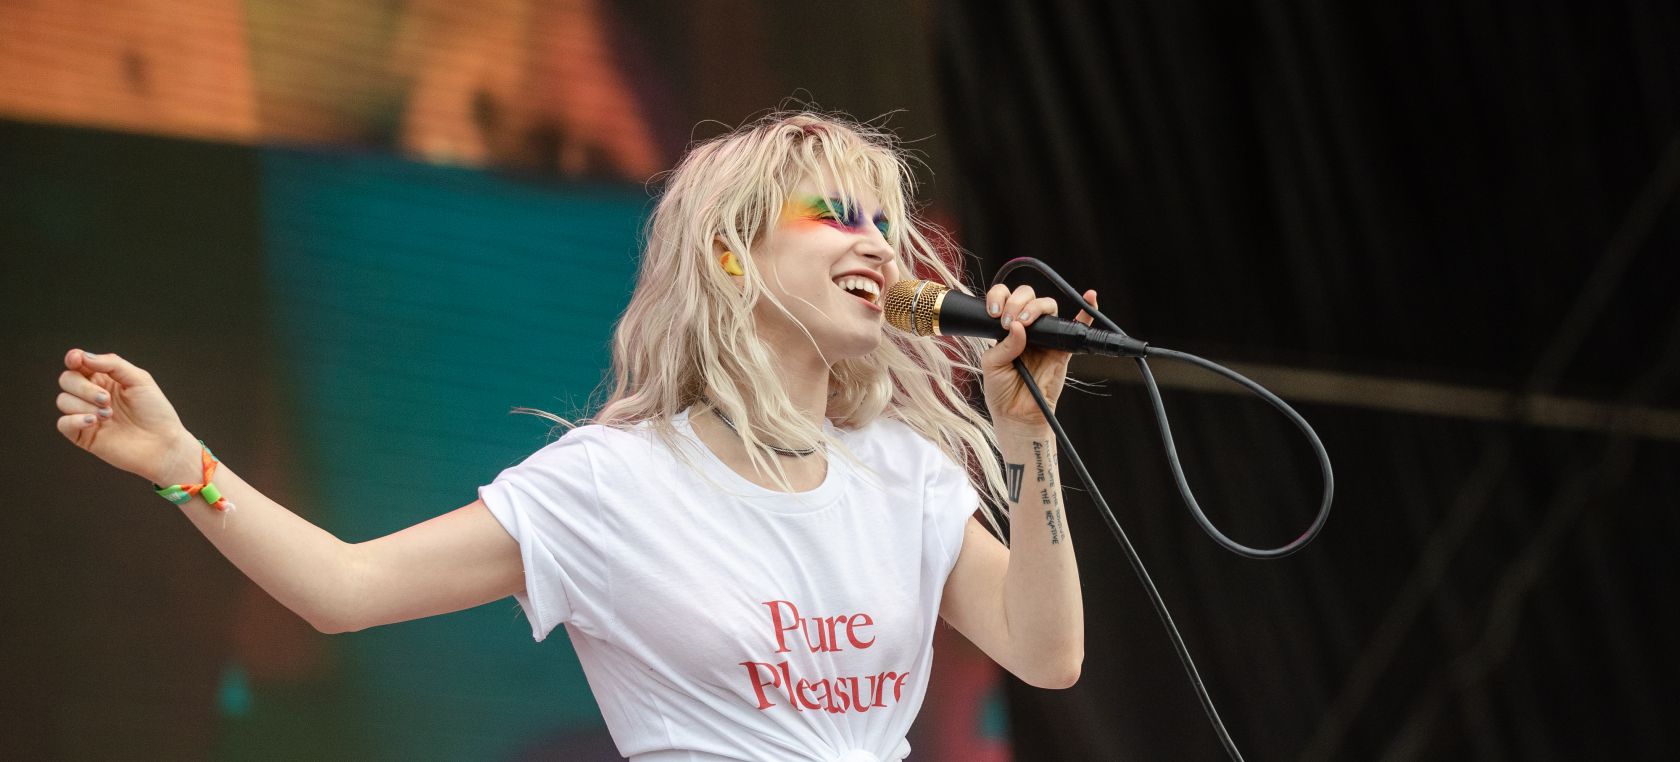 Paramore regresa en 2022 con un nuevo álbum